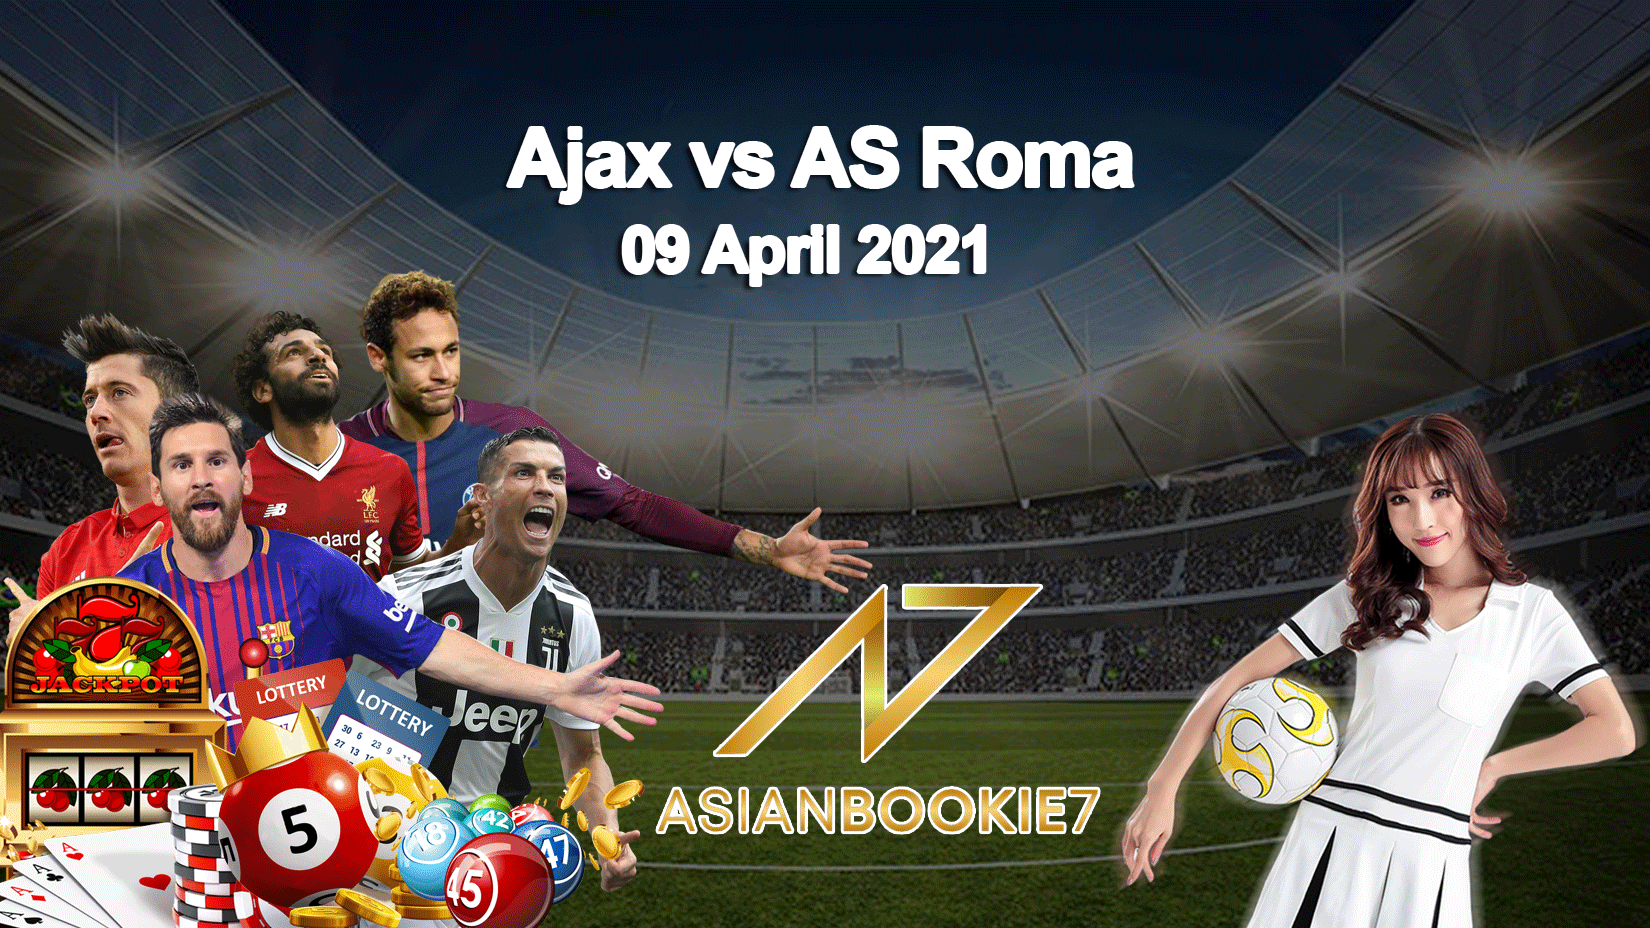 Prediksi-Ajax-vs-AS-Roma-09-April-2021